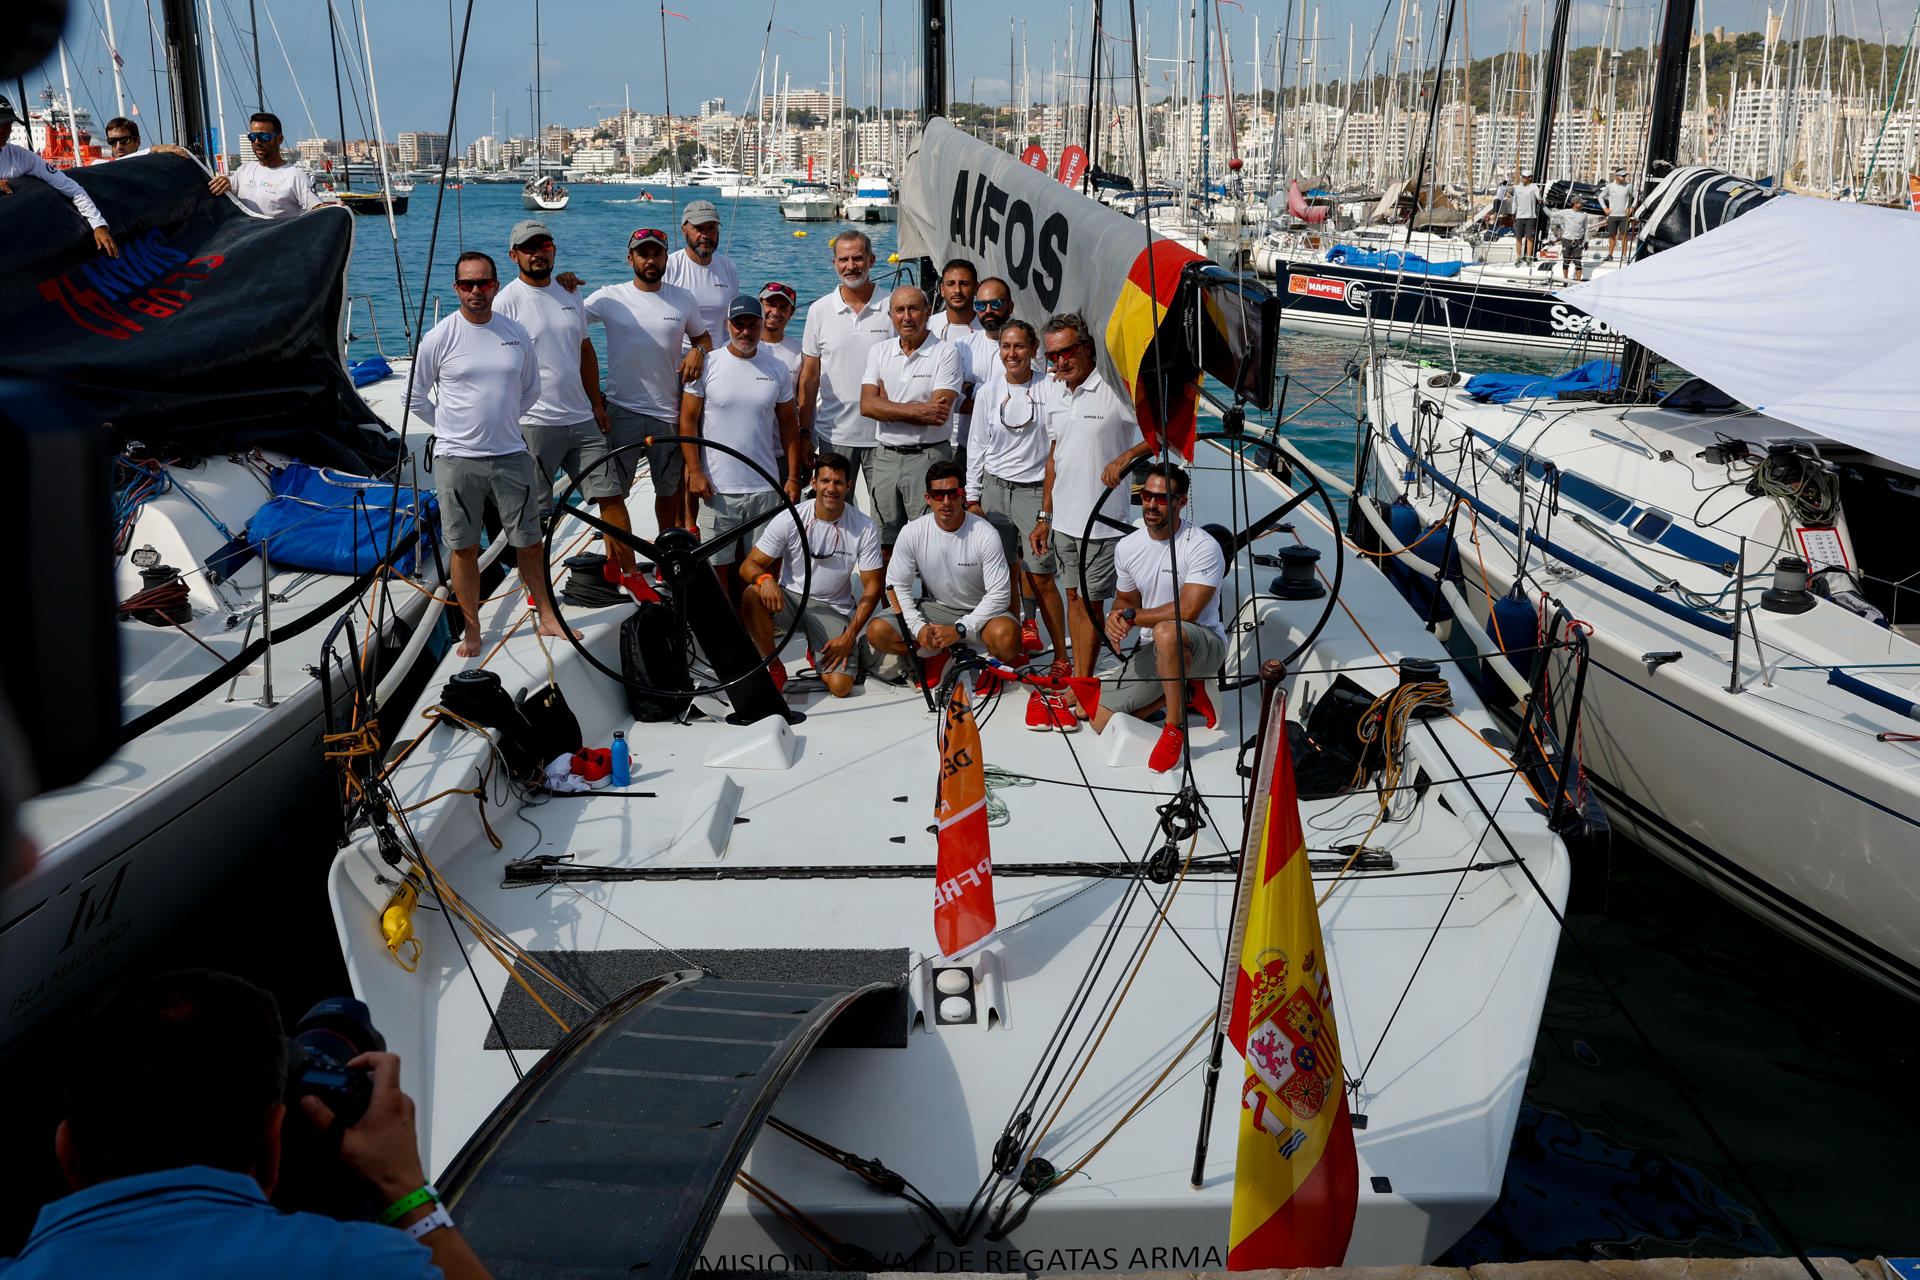 El rey Felipe VI posa junto a la tripulación a bordo del "Aifos" de la Armada Española al comienzo de la primera jornada de la Copa del Rey de vela, este lunes, en Palma.EFE/ Ballesteros
